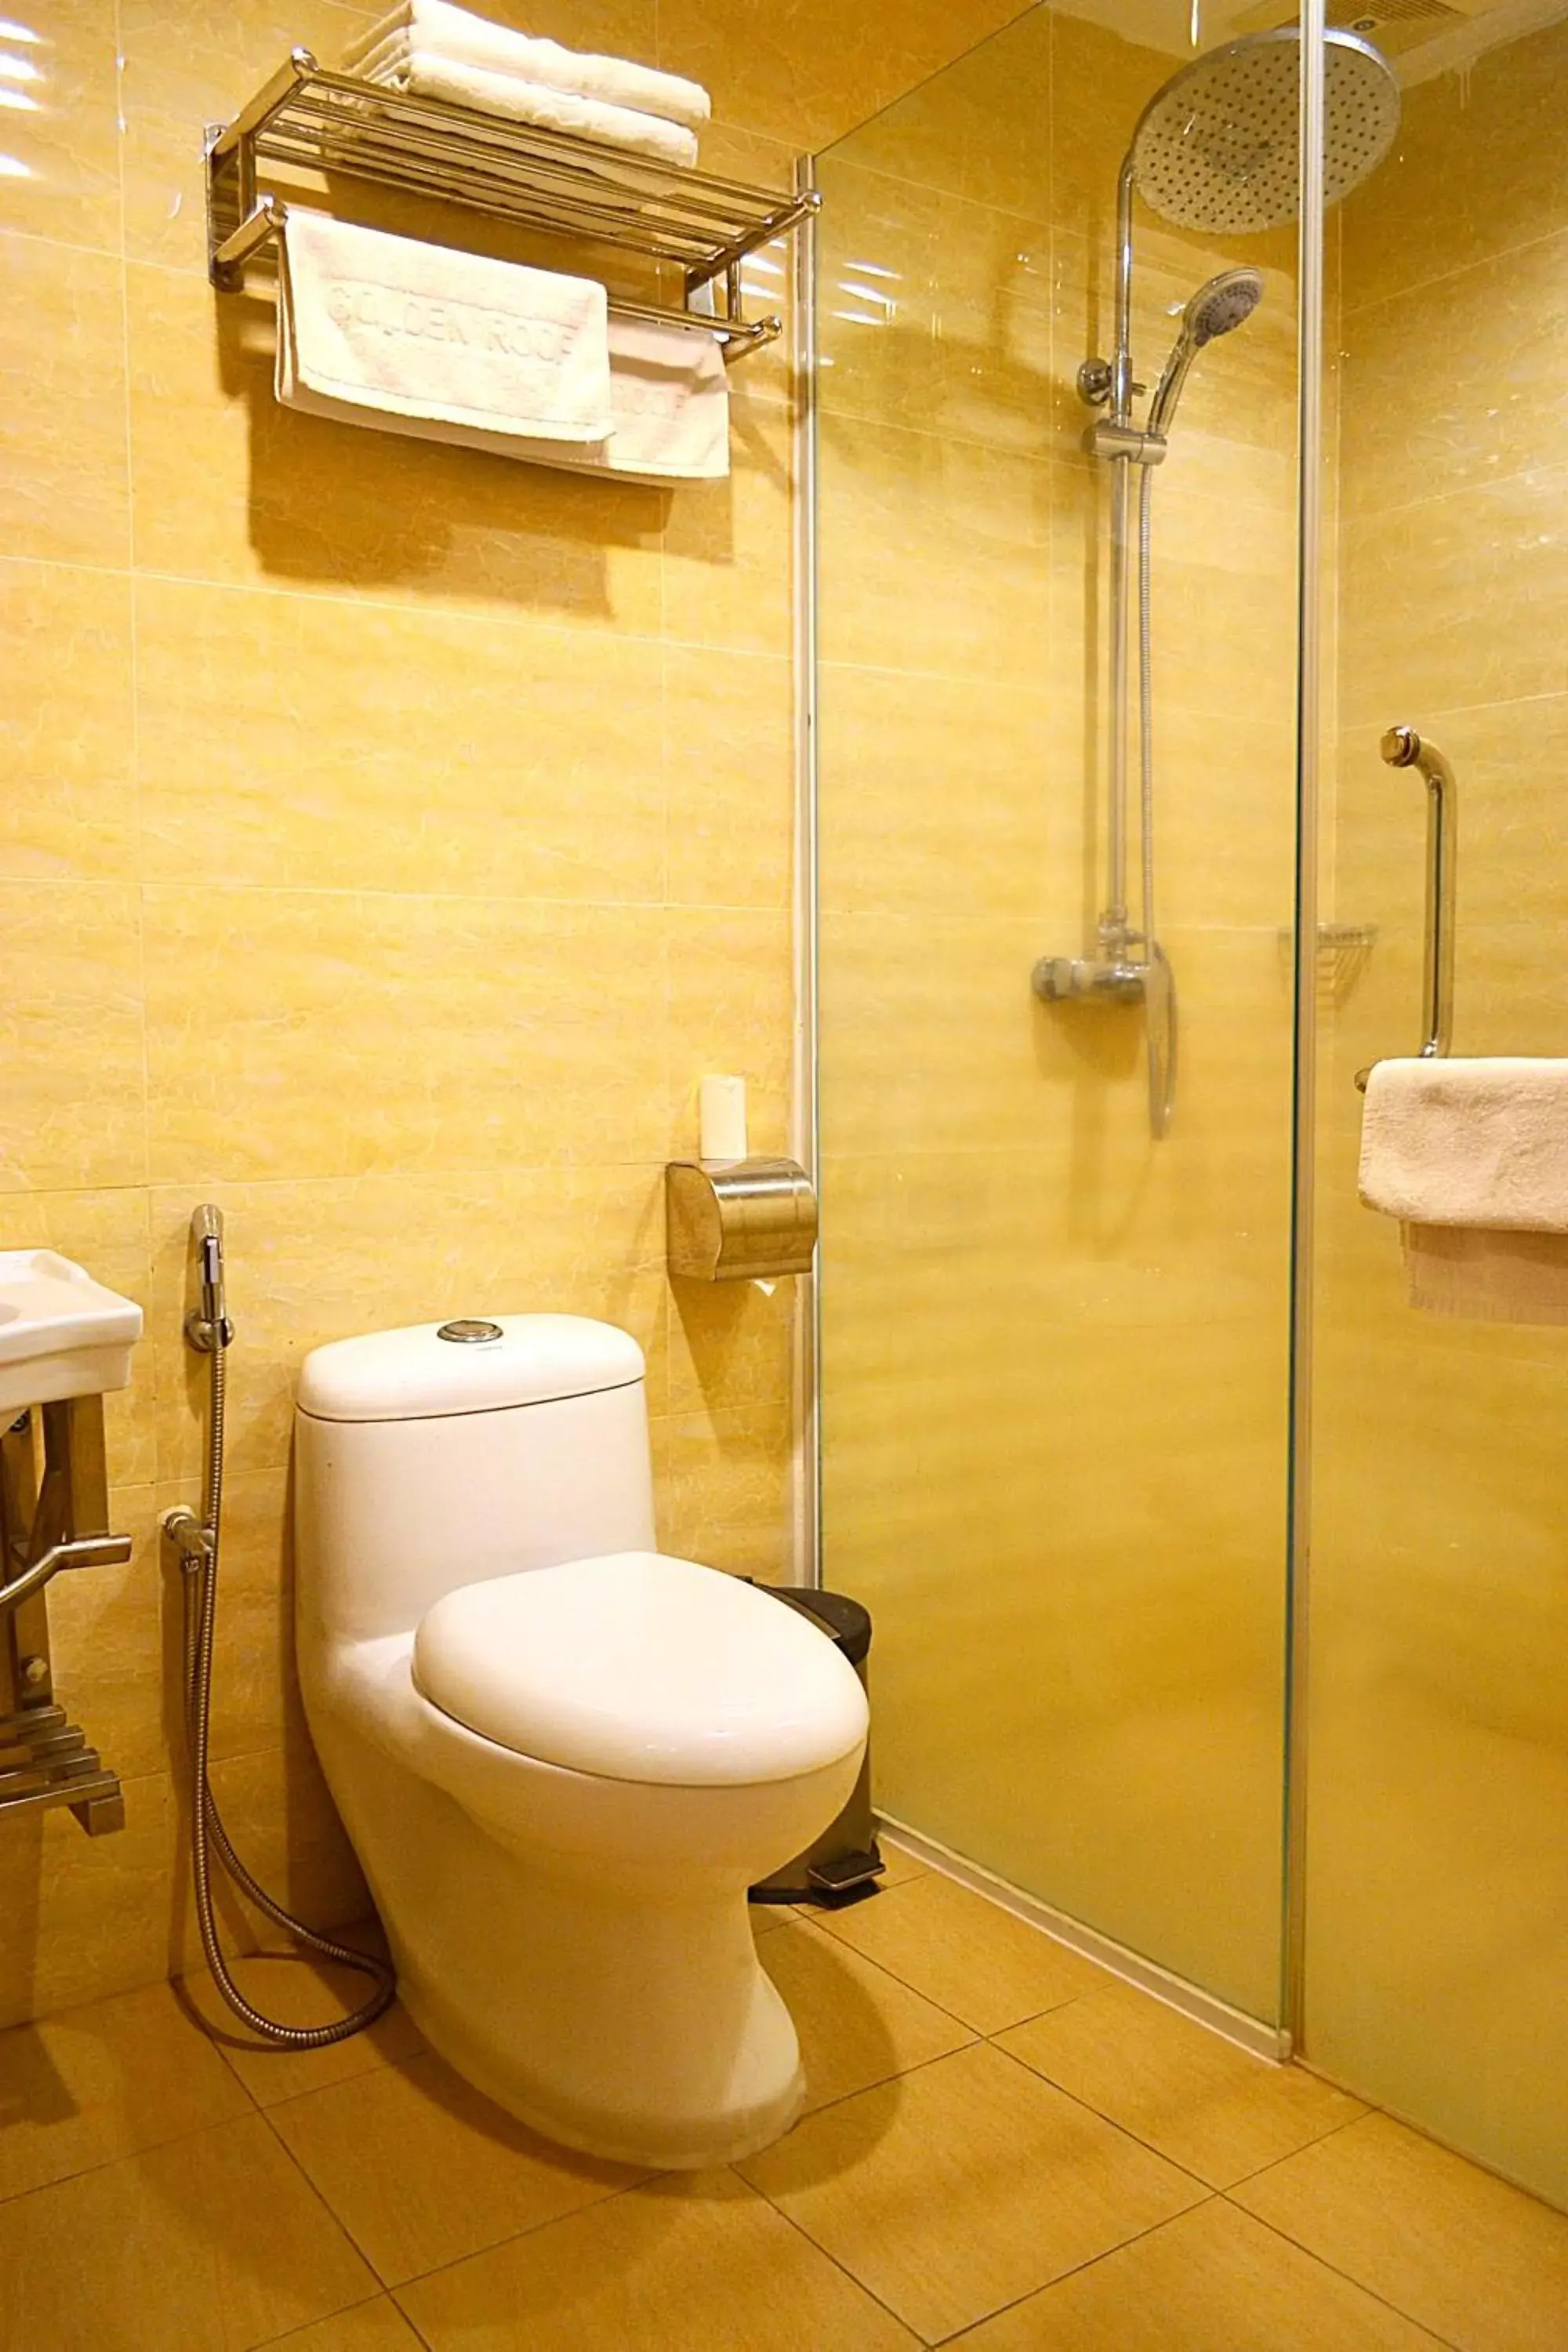 Toilet, Bathroom in Golden Roof Hotel Ampang Ipoh